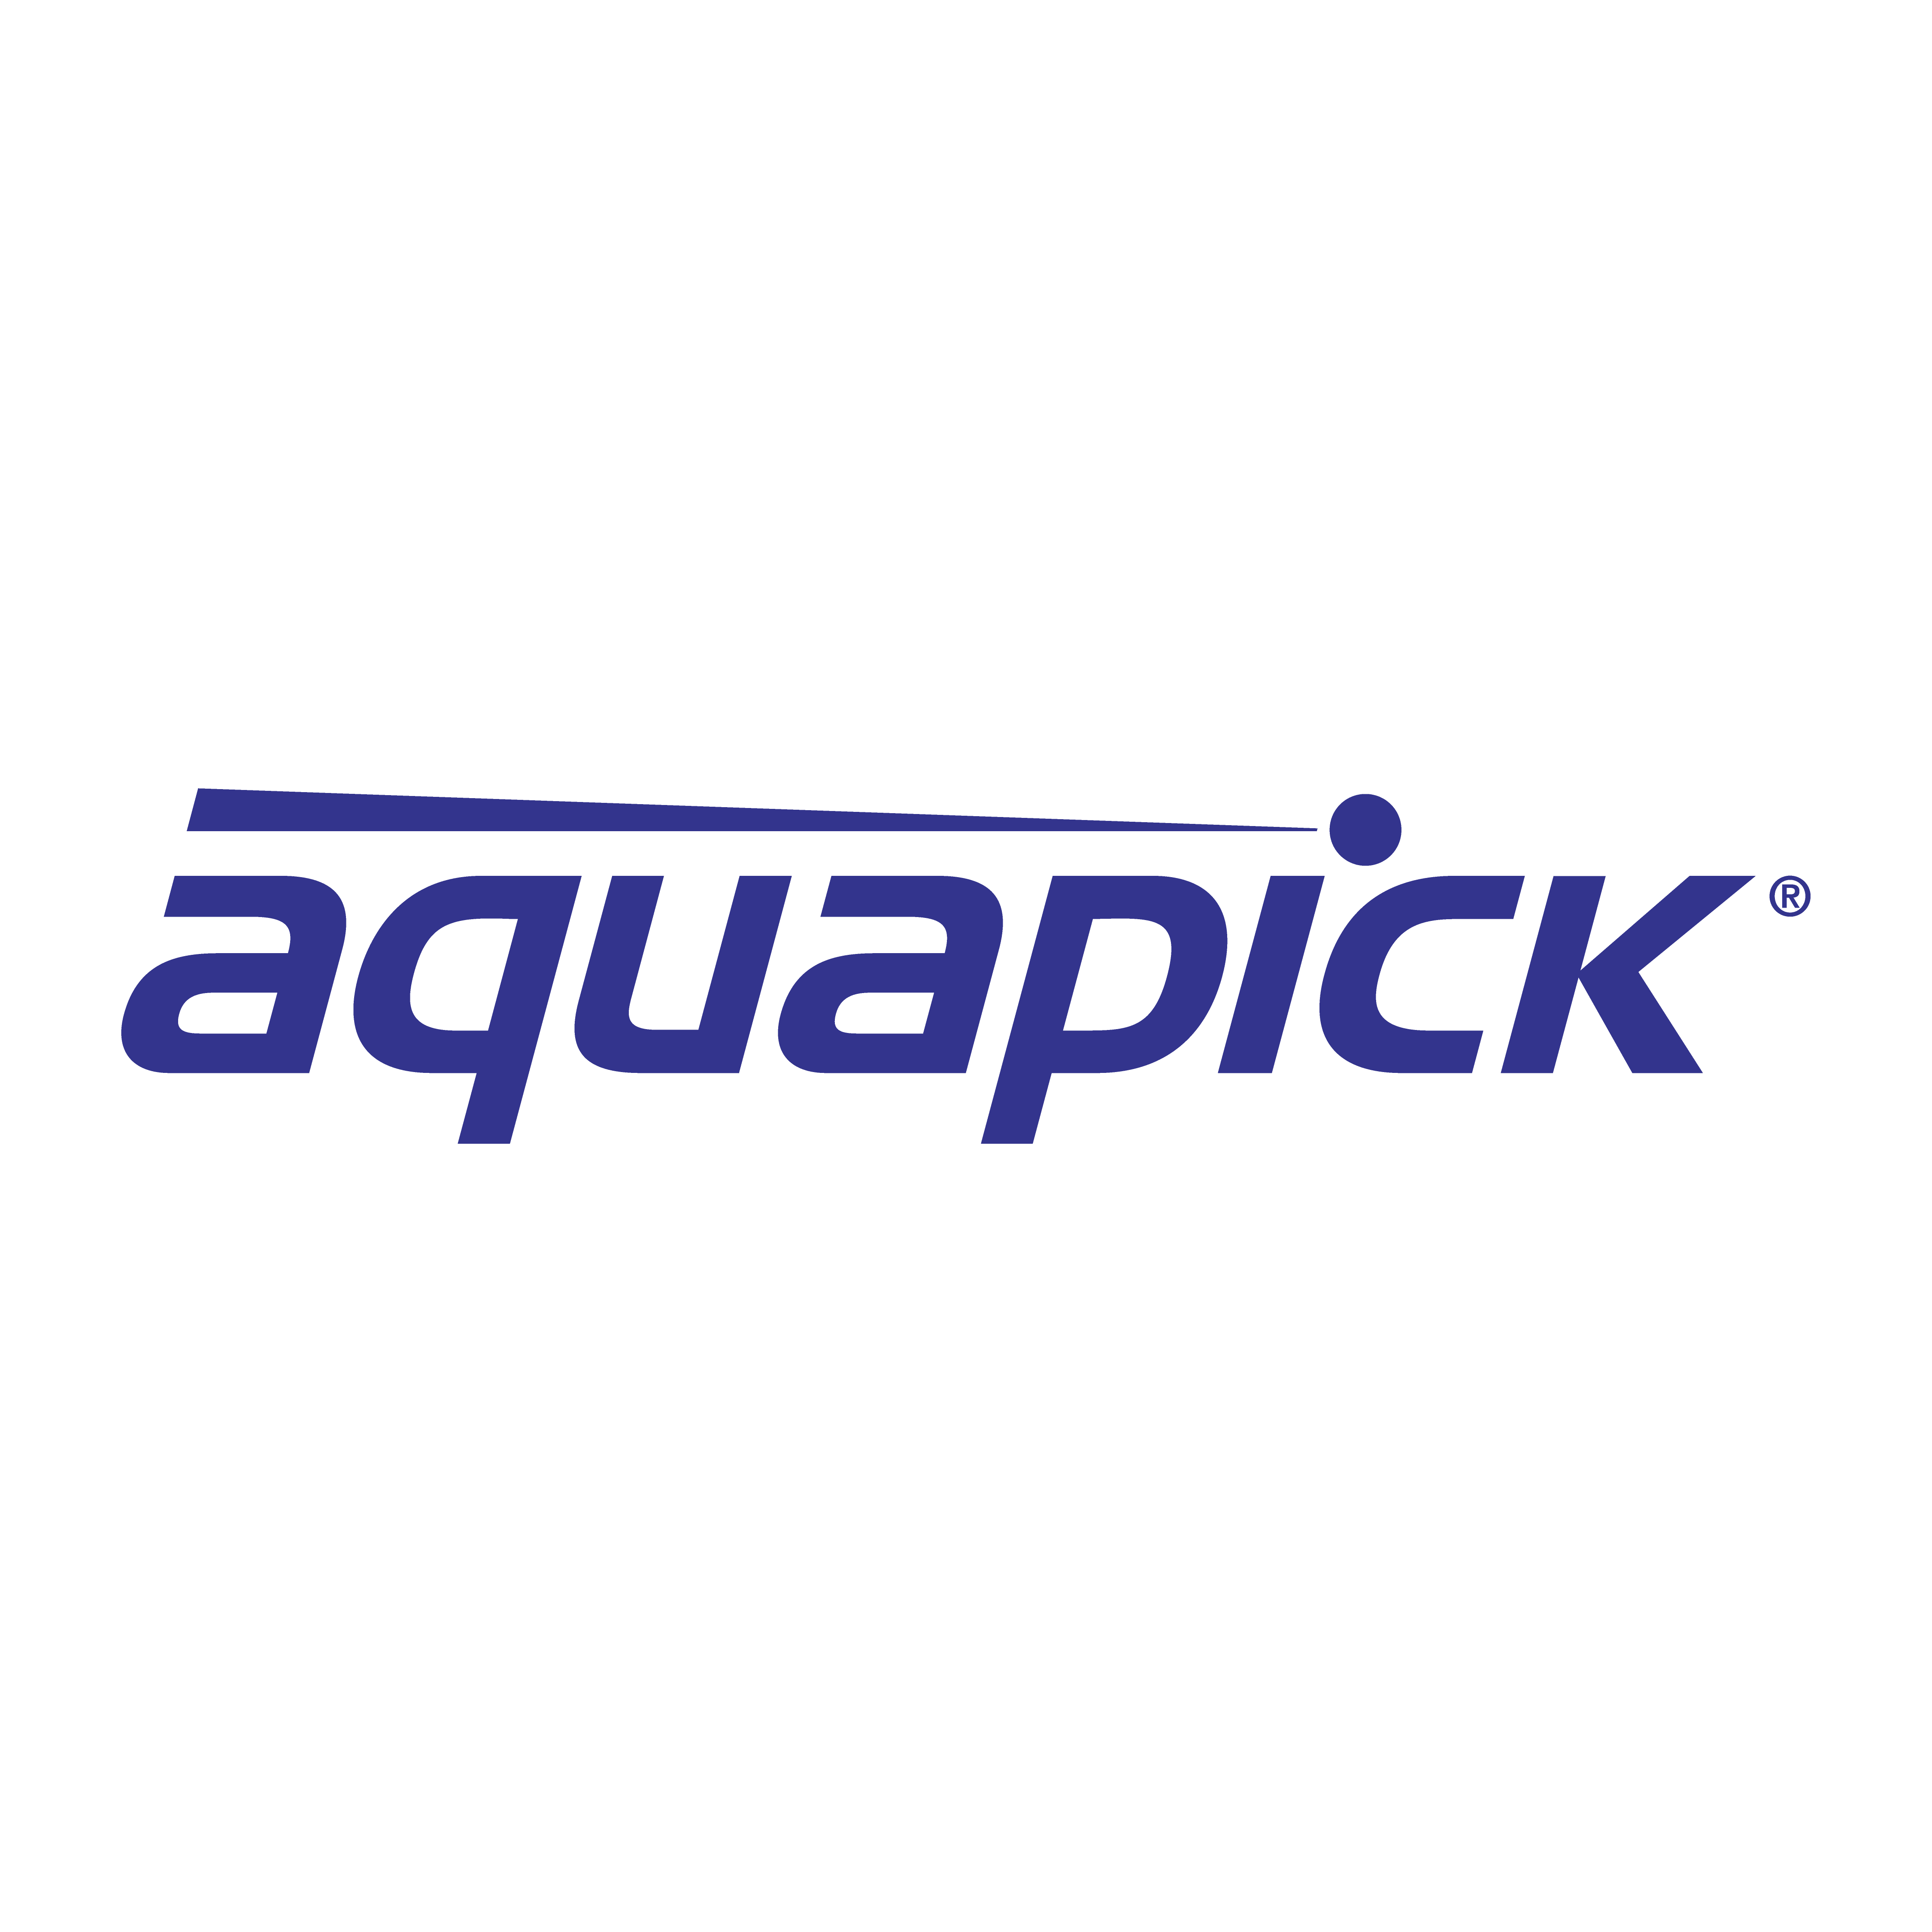 Aquapick